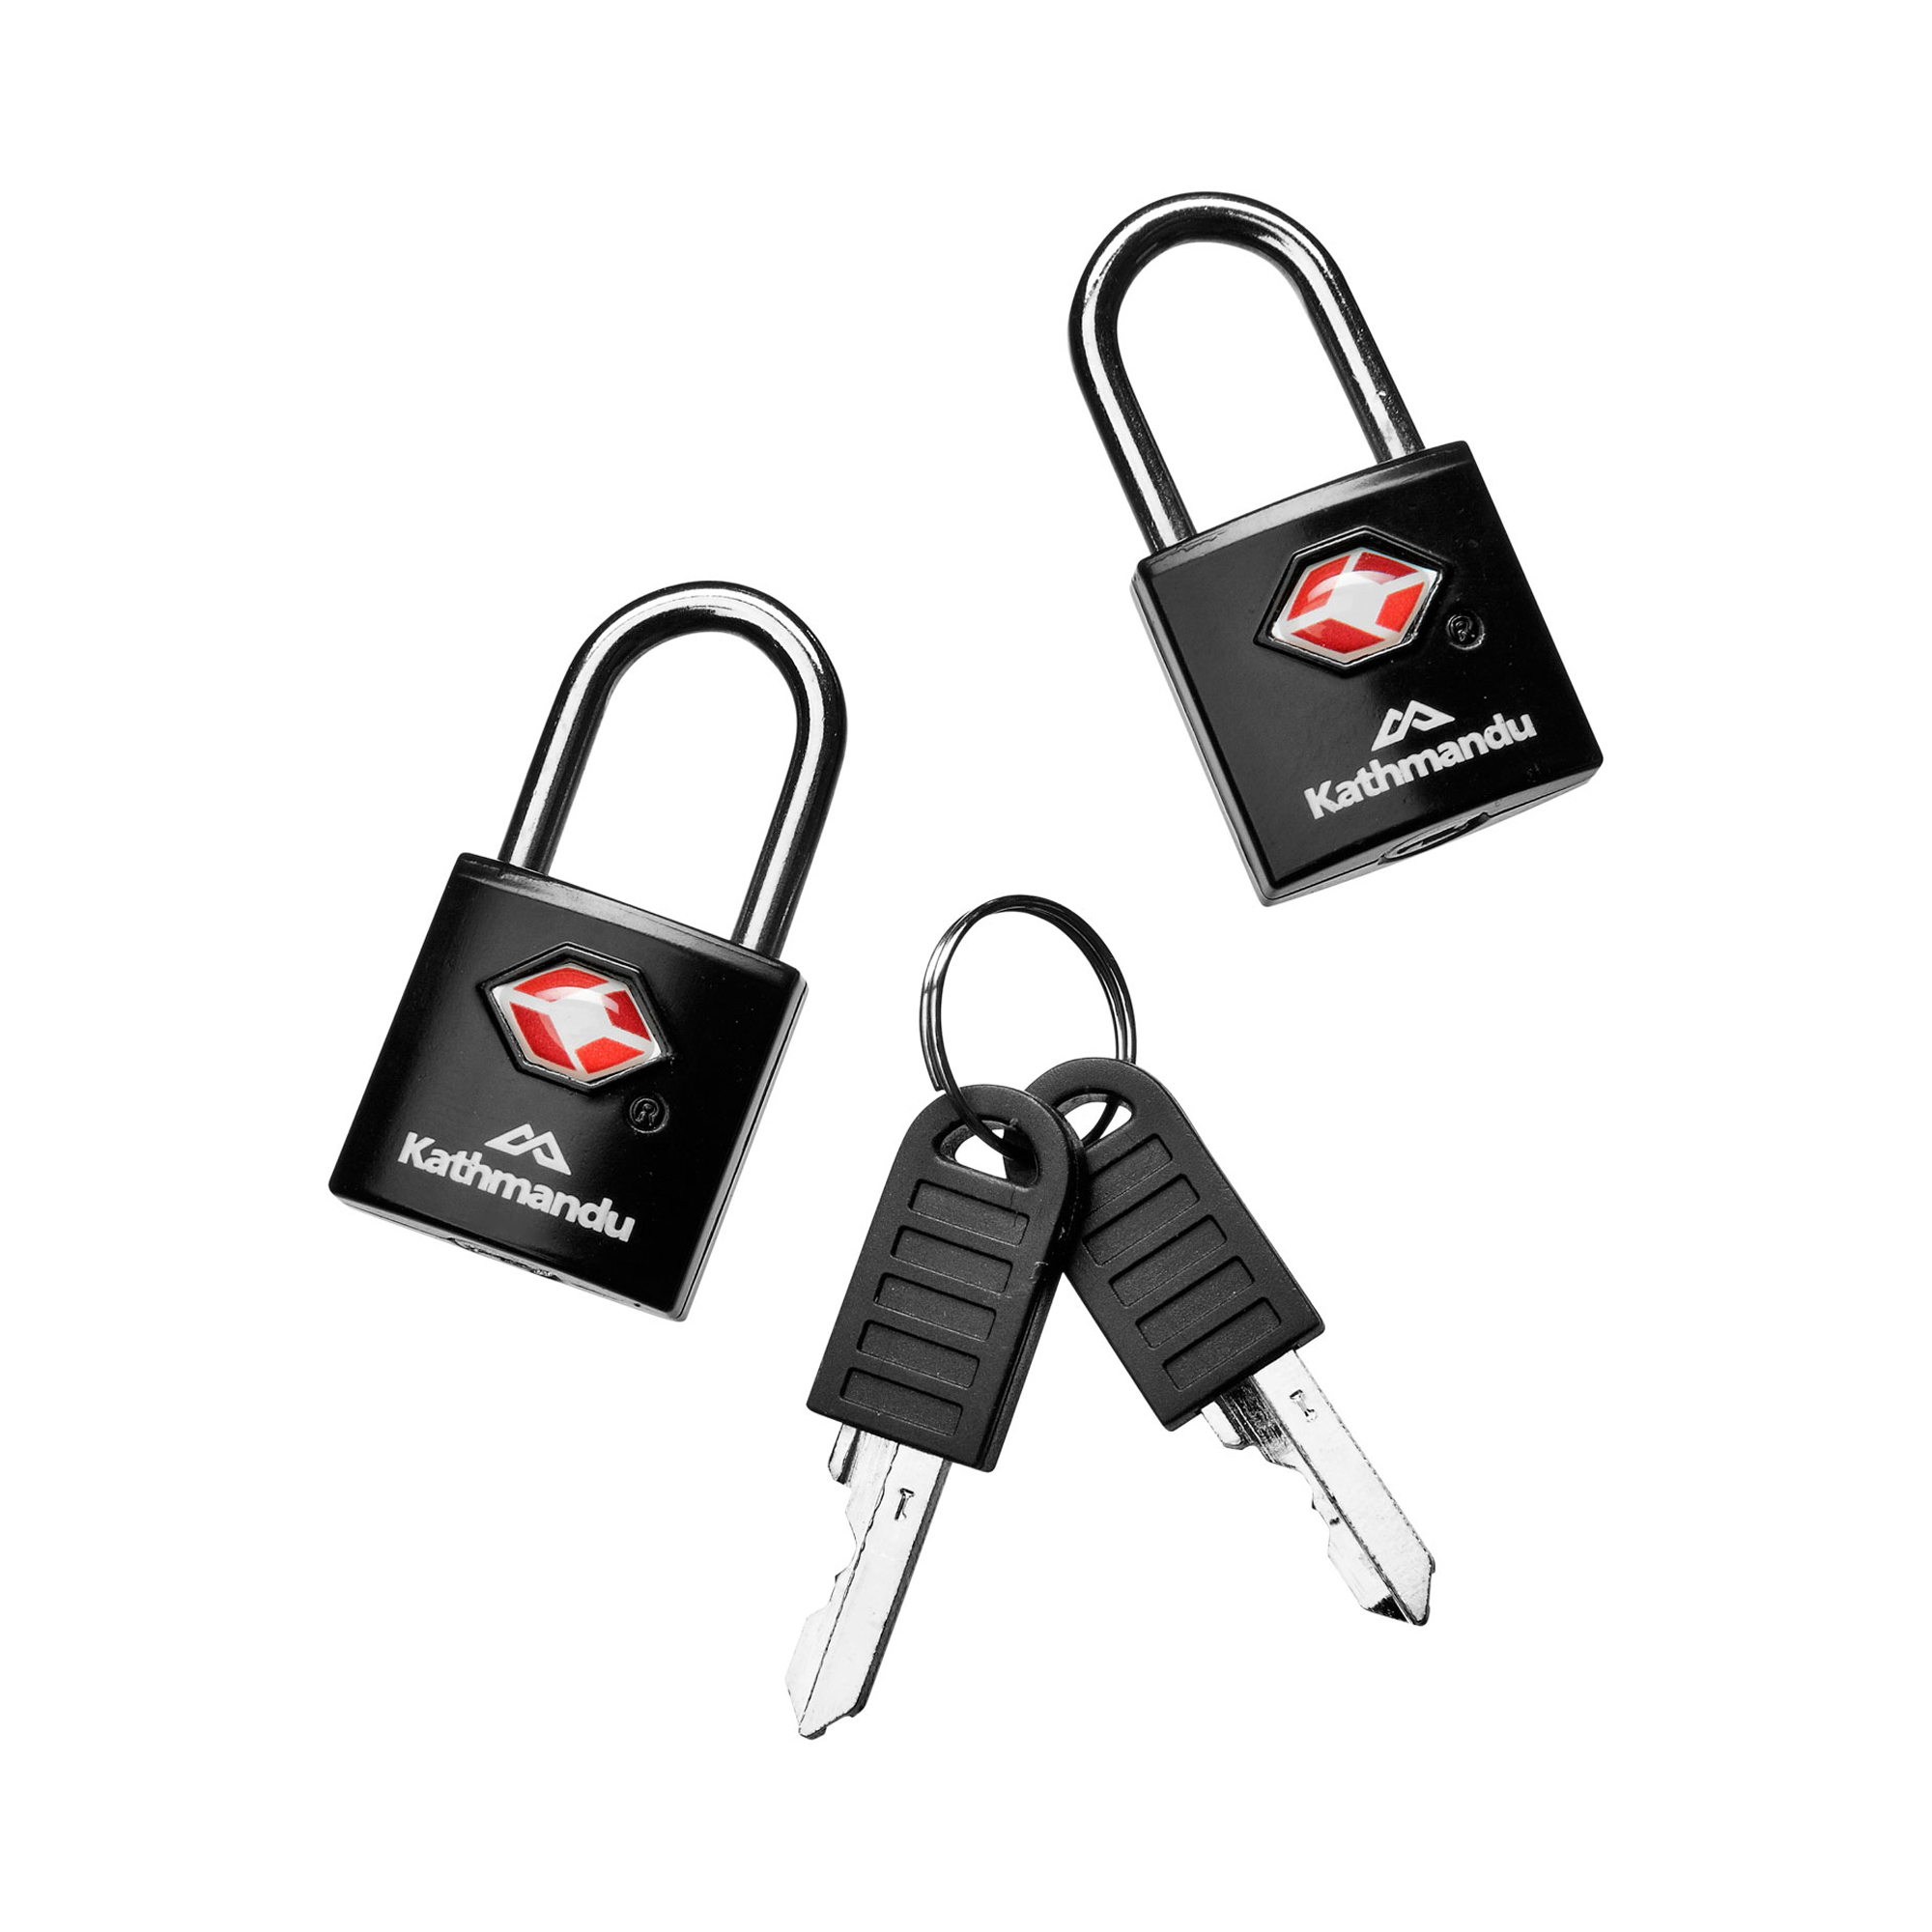 tsa master key set for sale